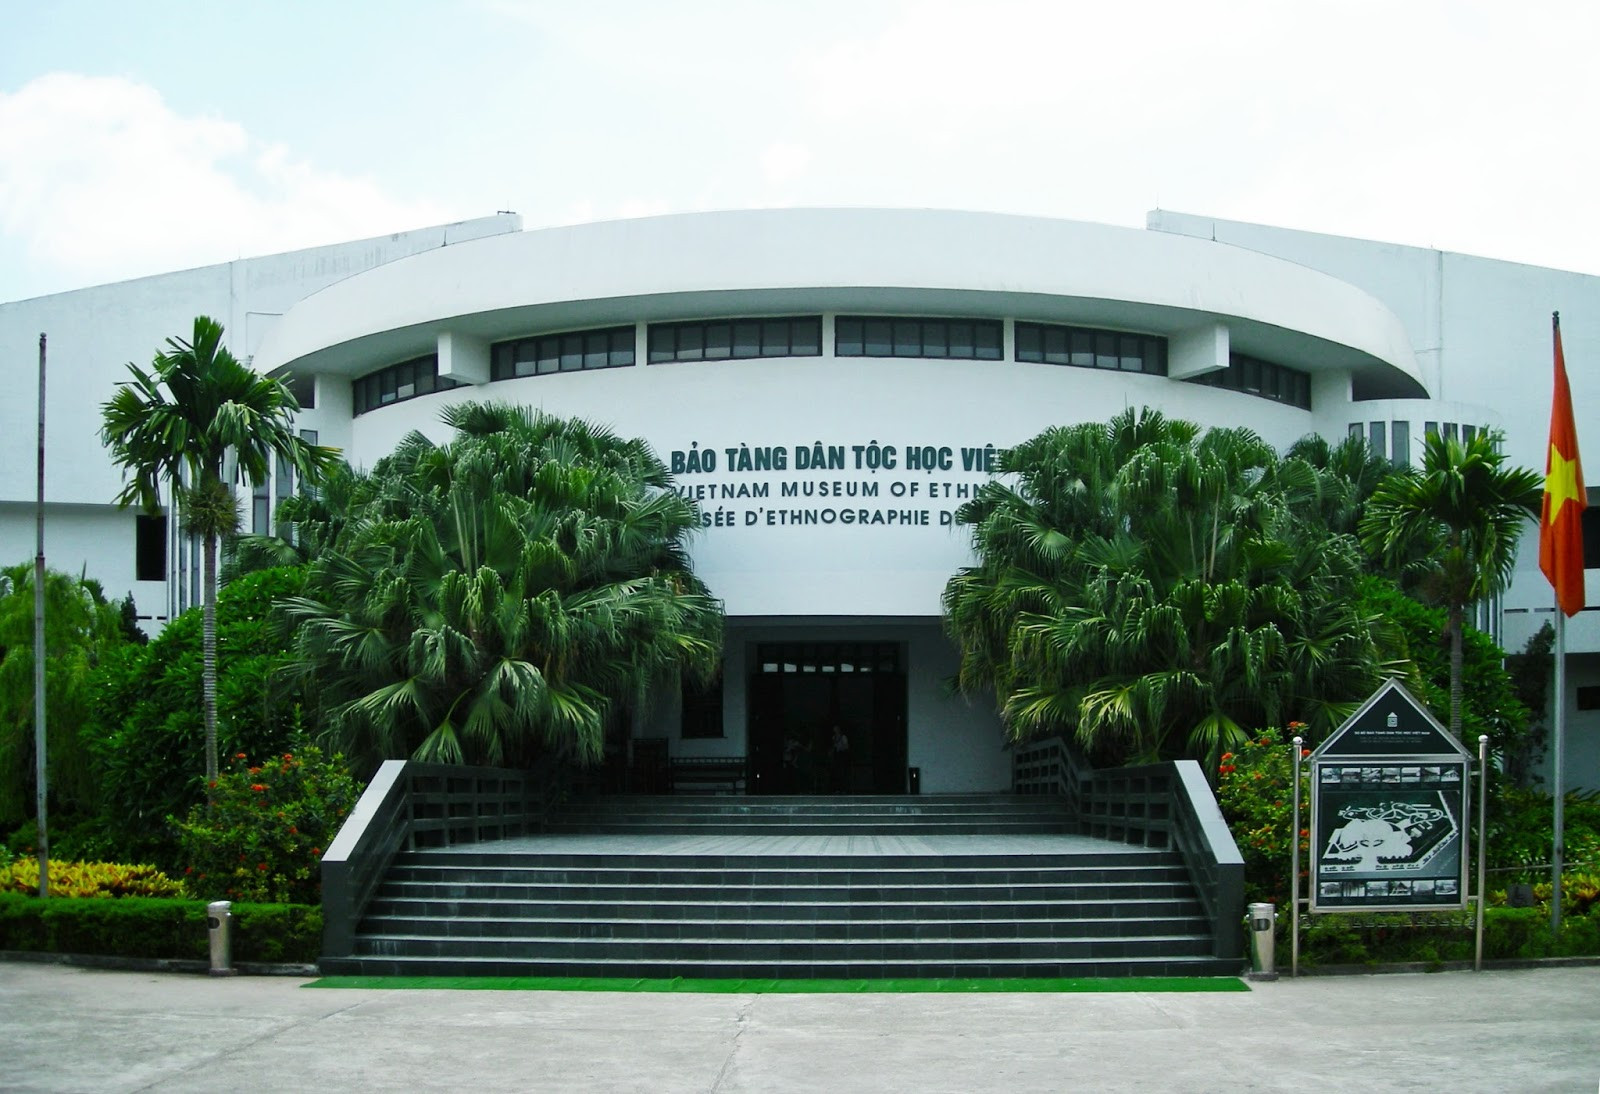 Bảo Tàng Dân Tộc Học Việt Nam - Vietnam Museum of Ethnology